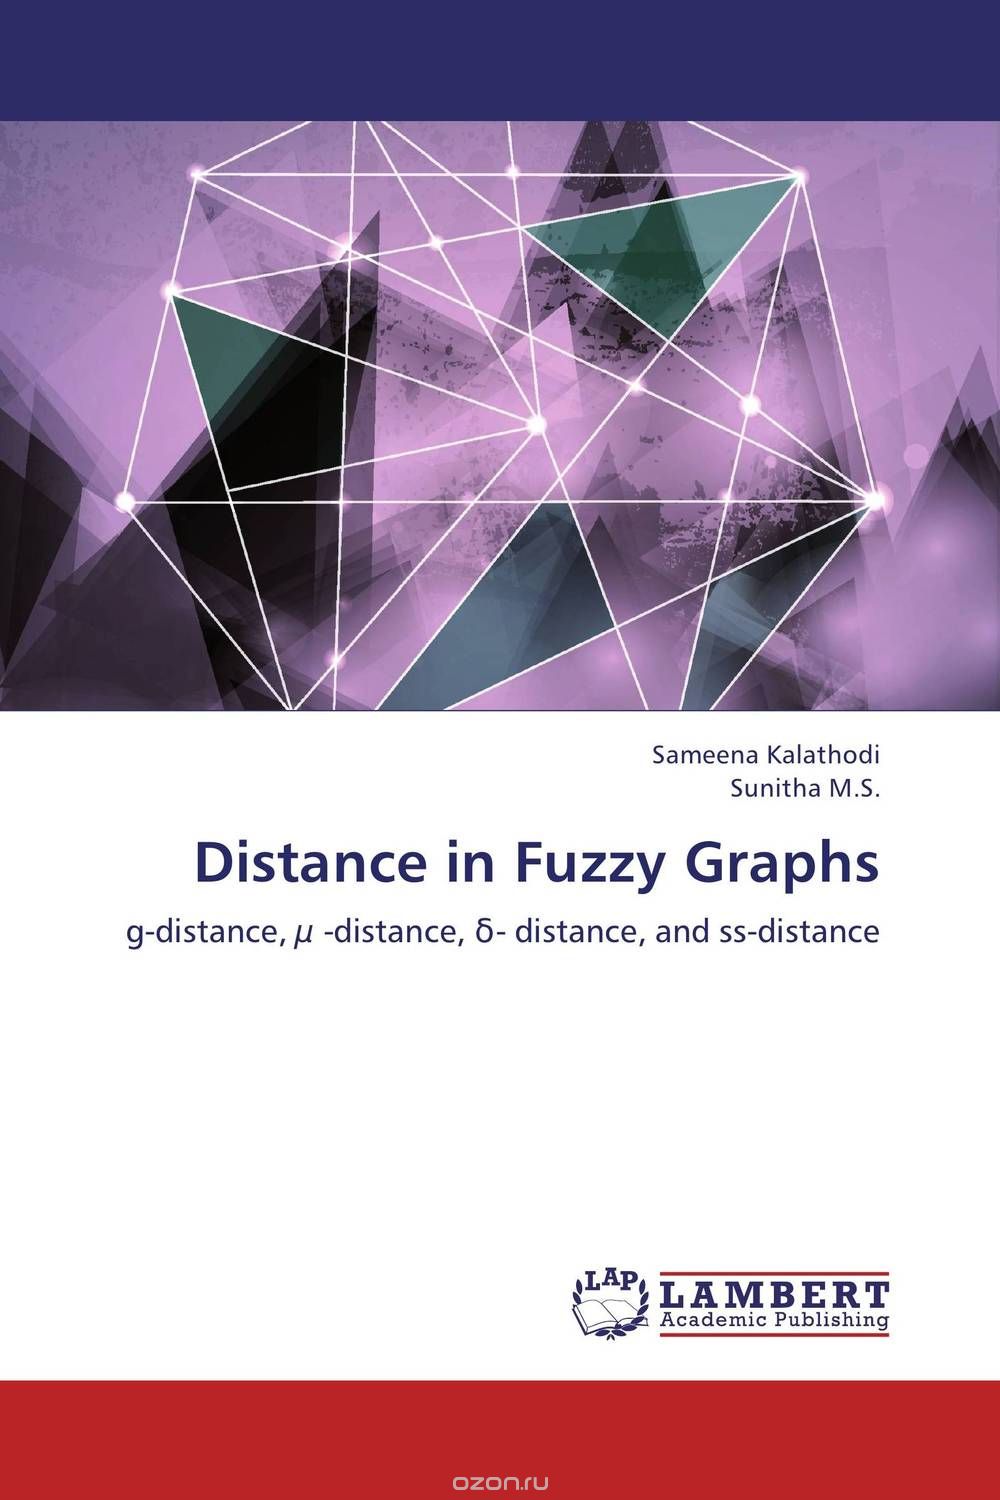 Скачать книгу "Distance in Fuzzy Graphs"